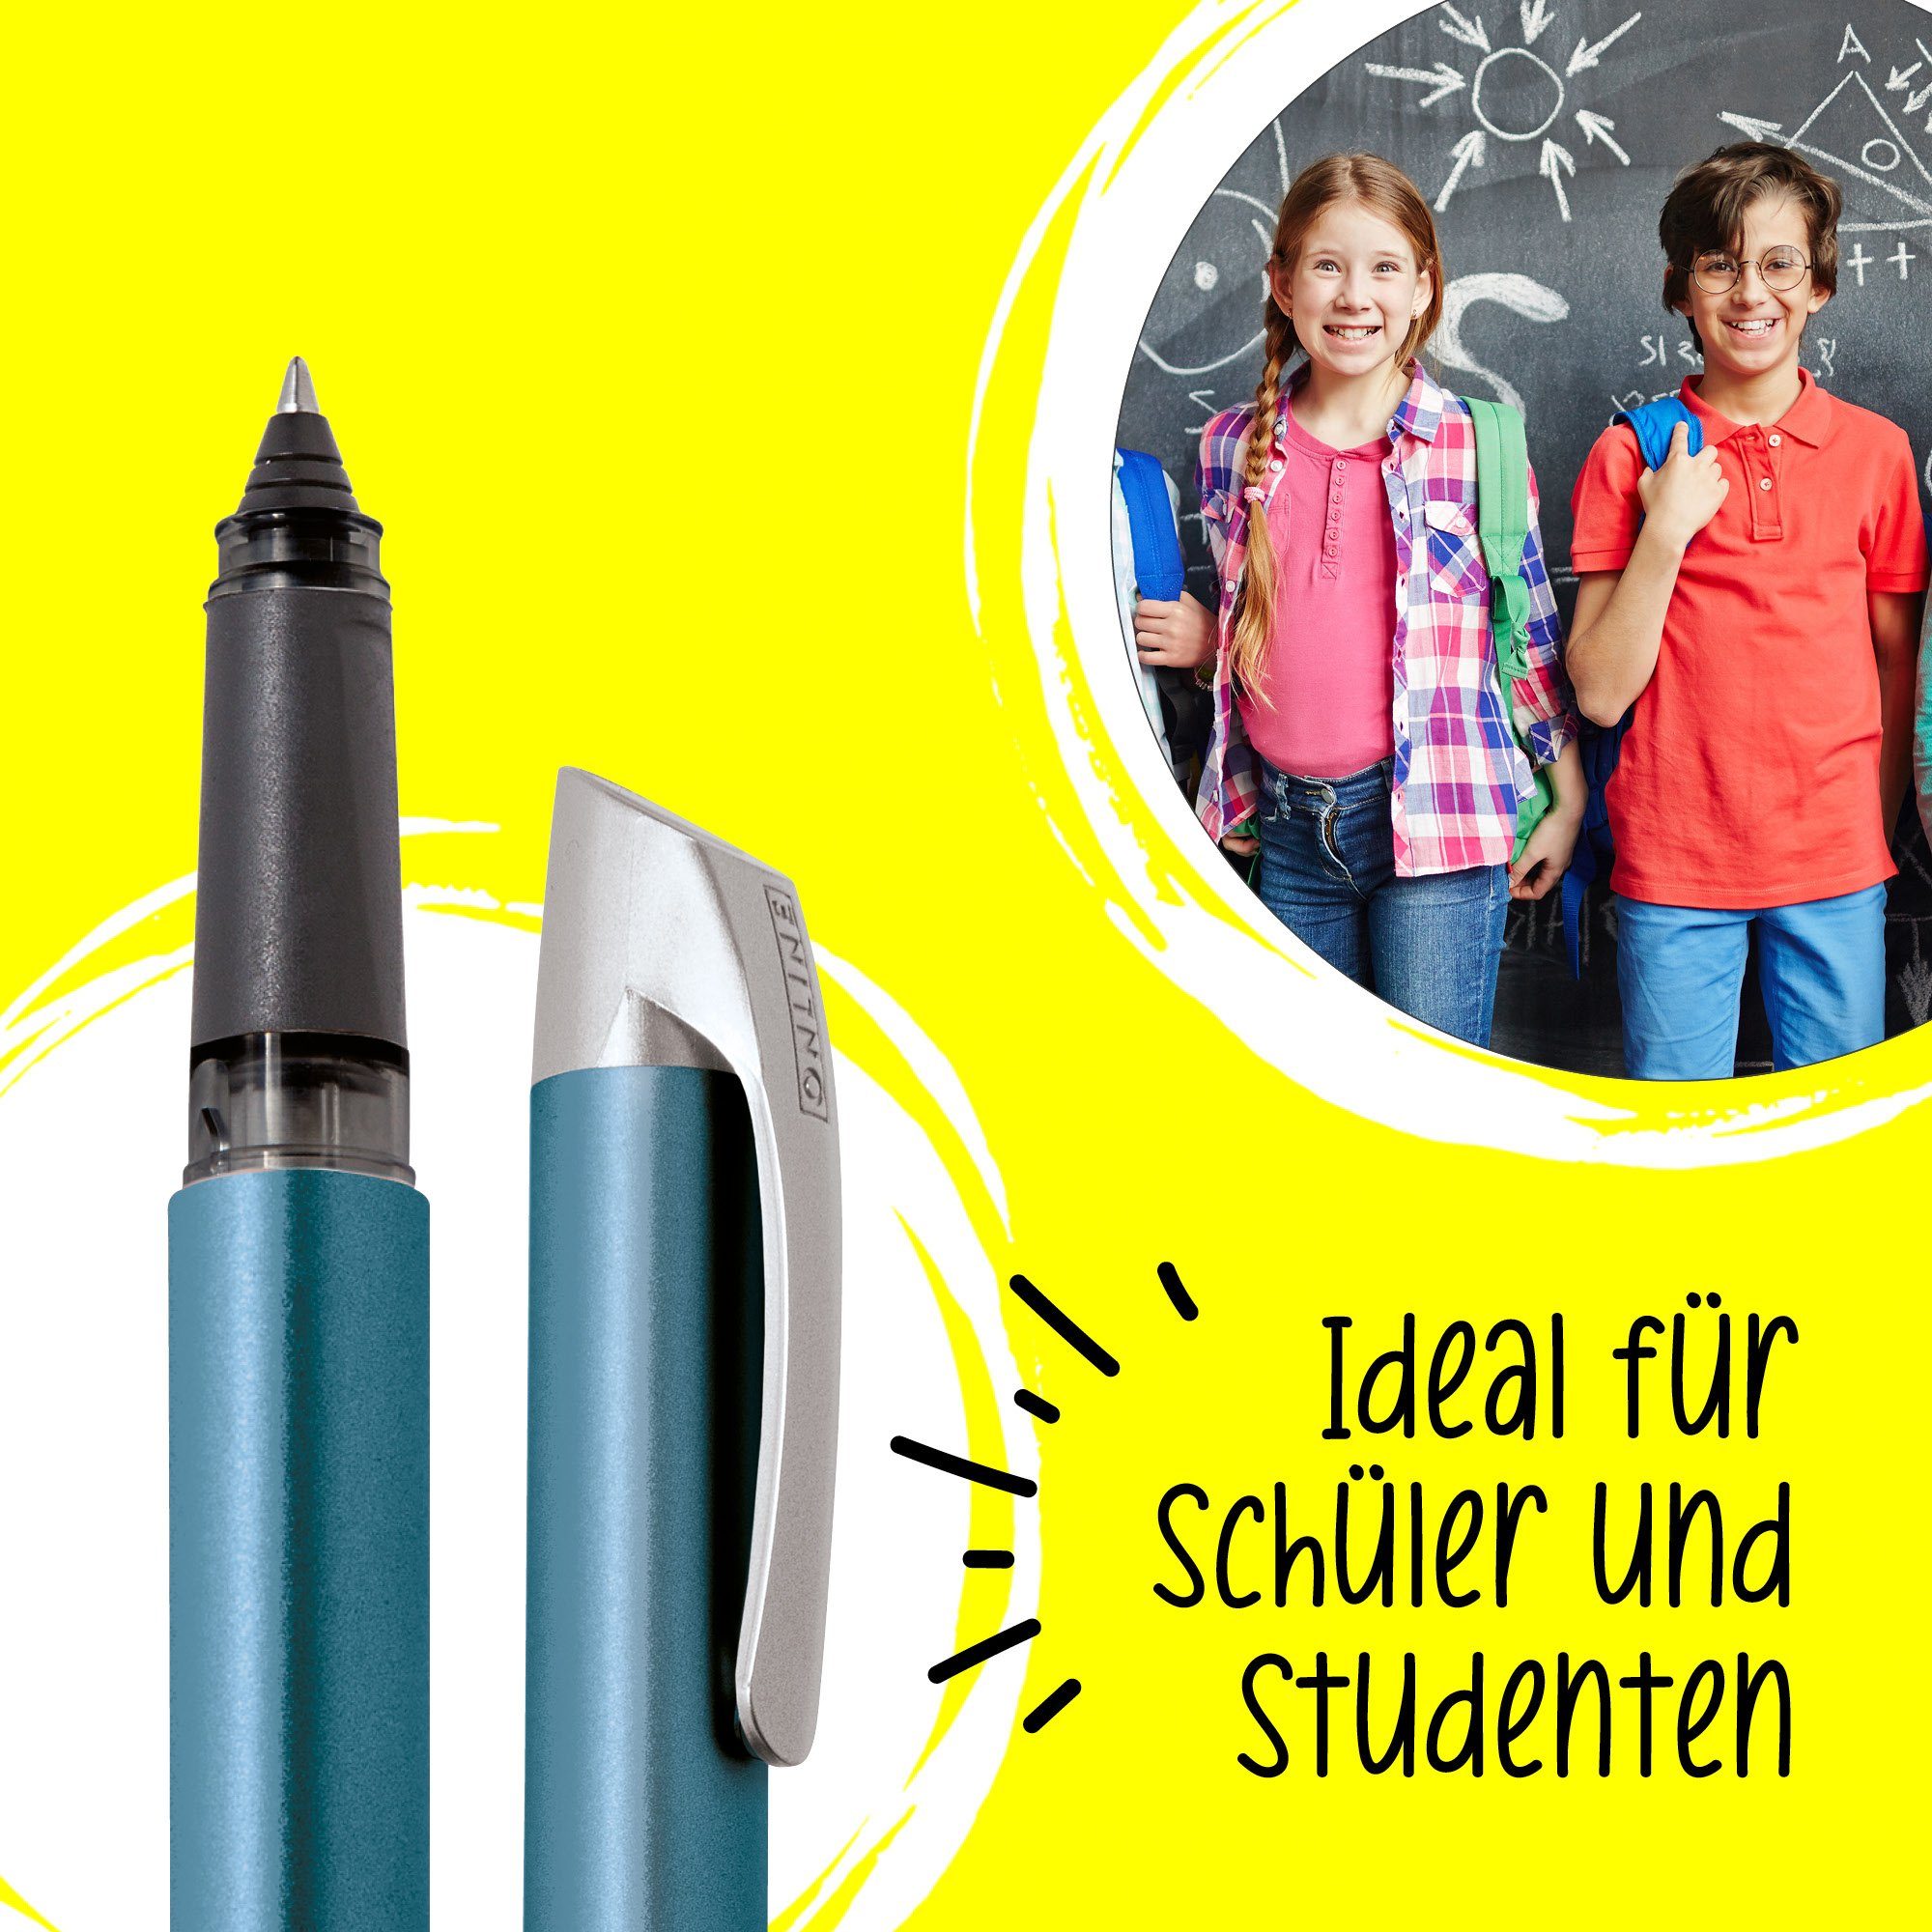 Campus ergonomisch, in Petrol die Pen Schule, Tintenroller Deutschland hergestellt Rollerball, Online ideal für